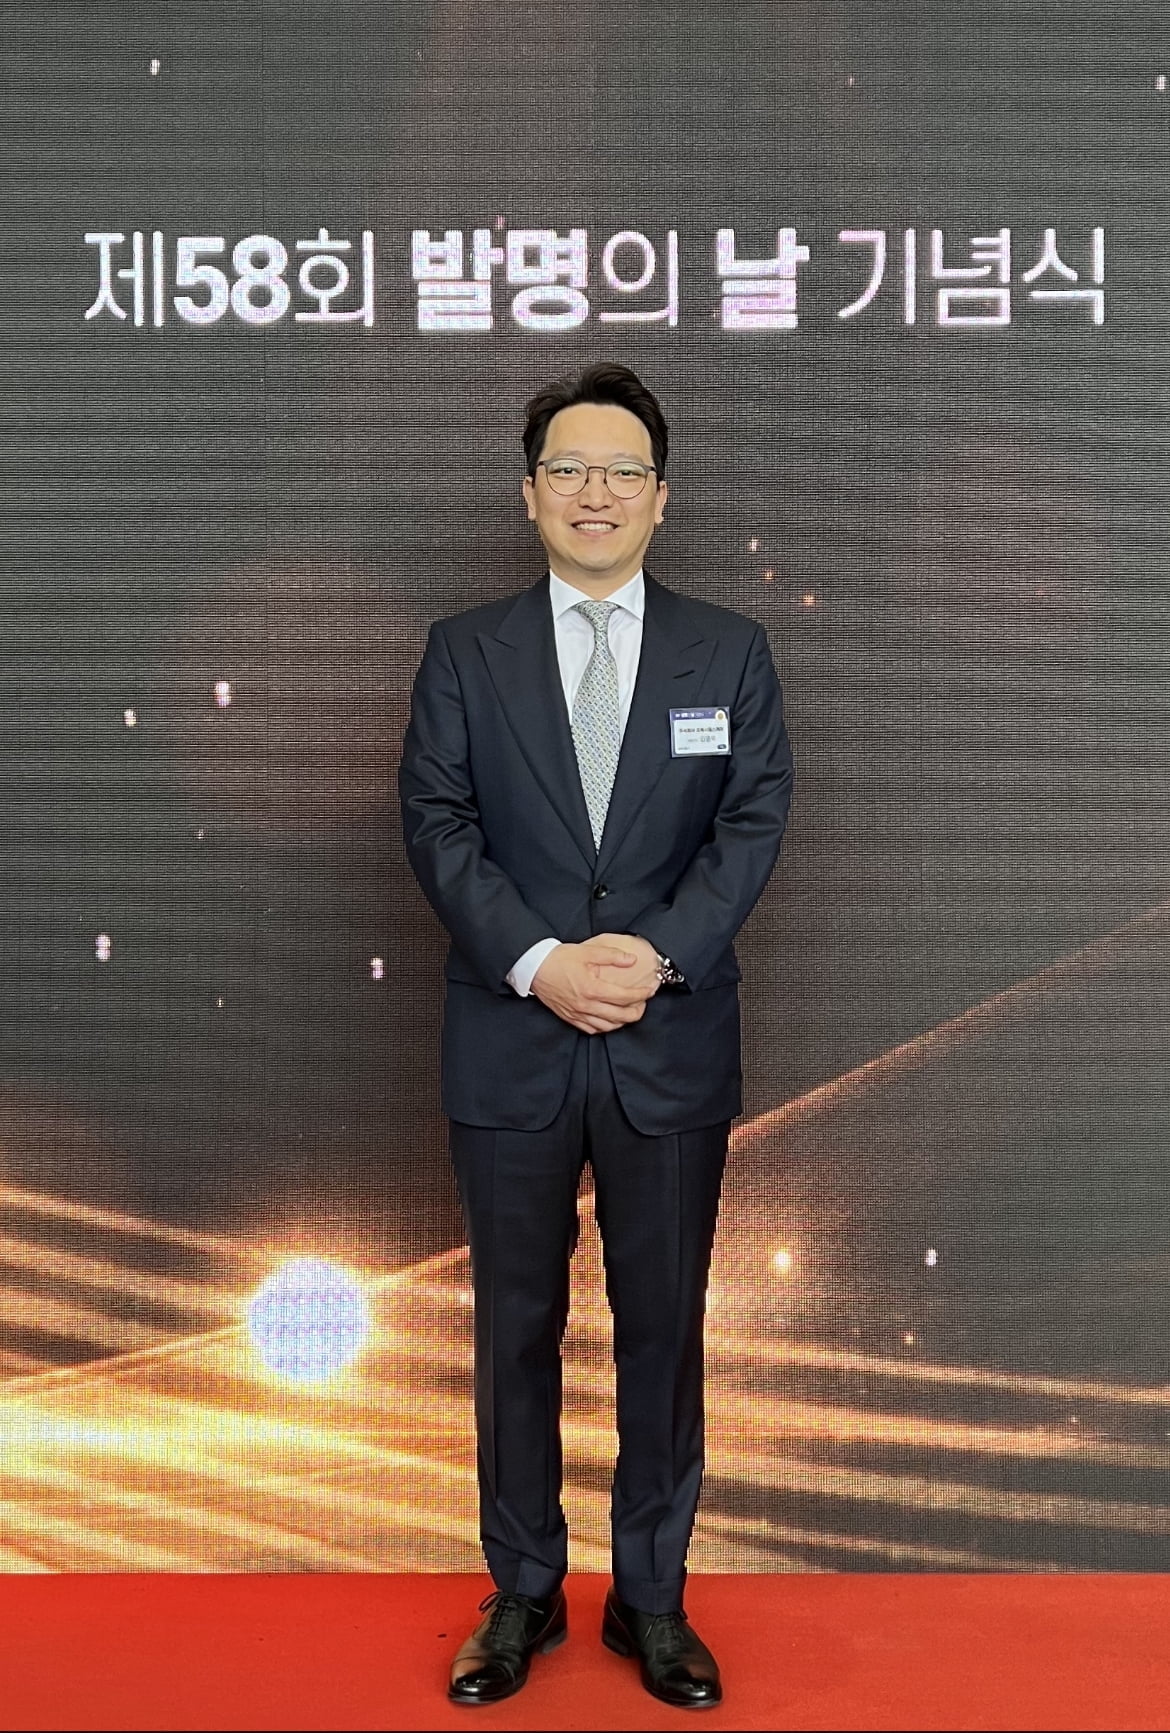 프록시헬스케어 김영욱 대표, 58회 발명의 날 과학기술정보통신부 장관 표창